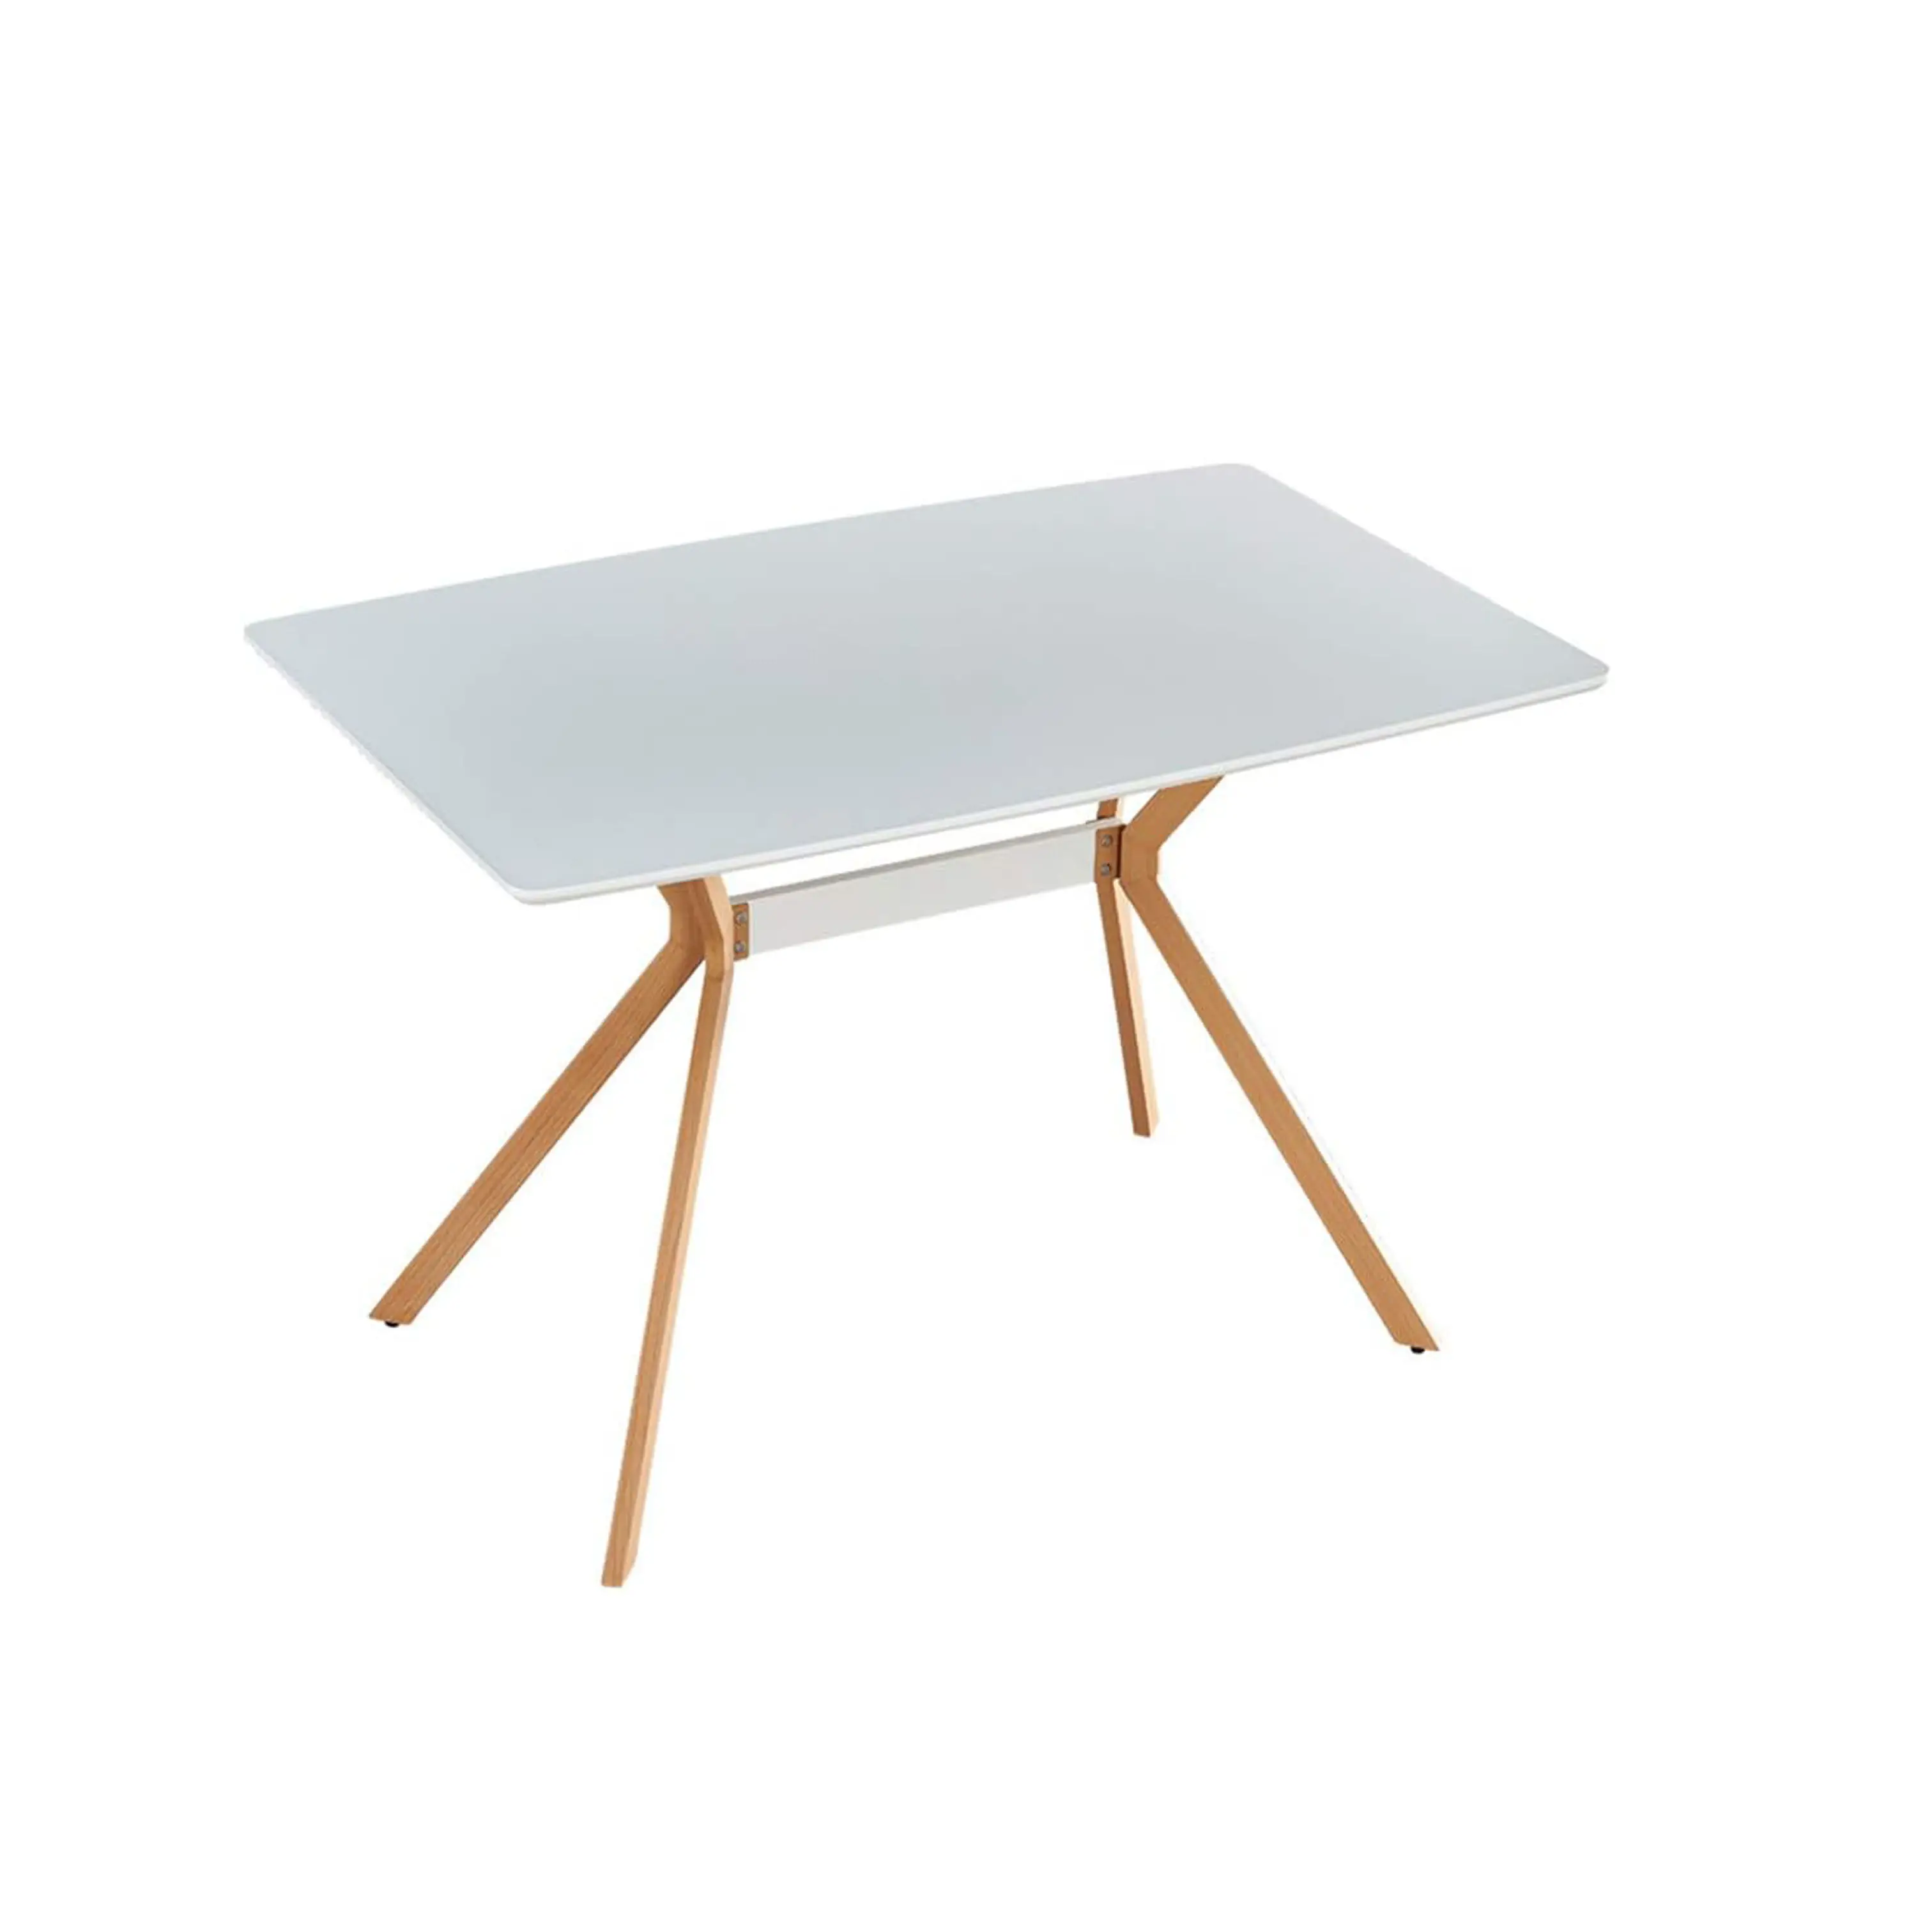 Hiện đại tối giản phong cách bằng gỗ Countertop trắng hình chữ nhật phẳng chân bàn ăn nhà bếp